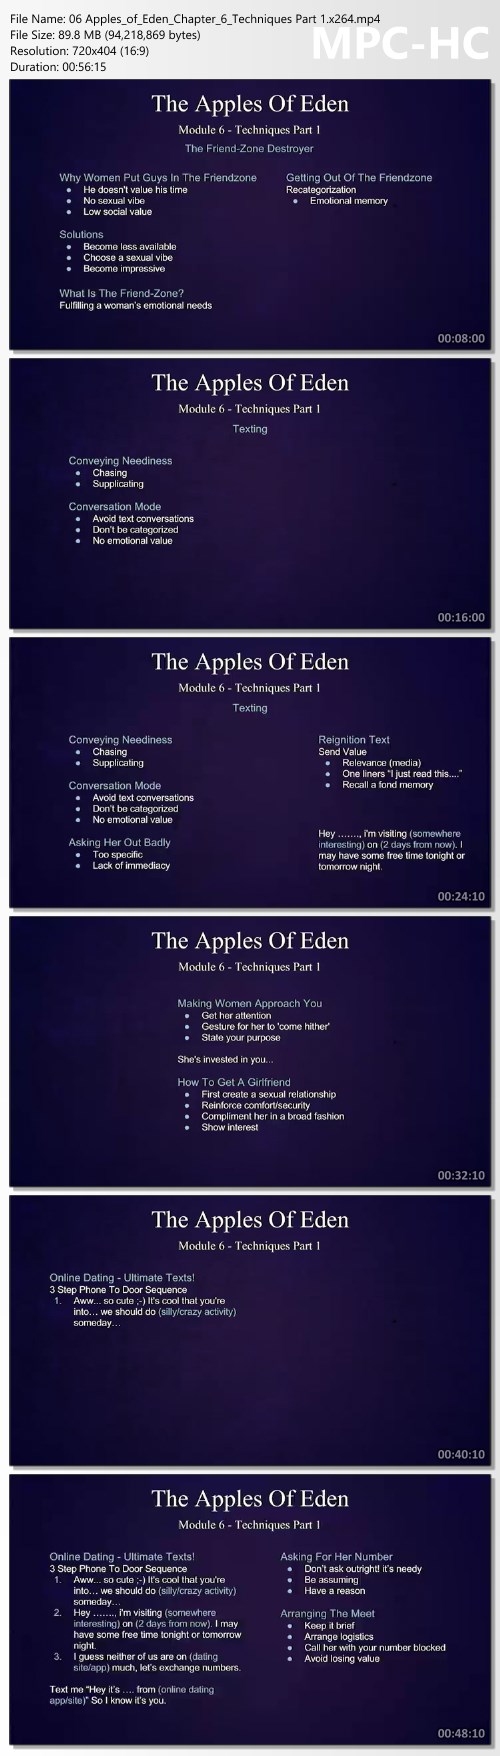 Apples of Eden - Matt Evans